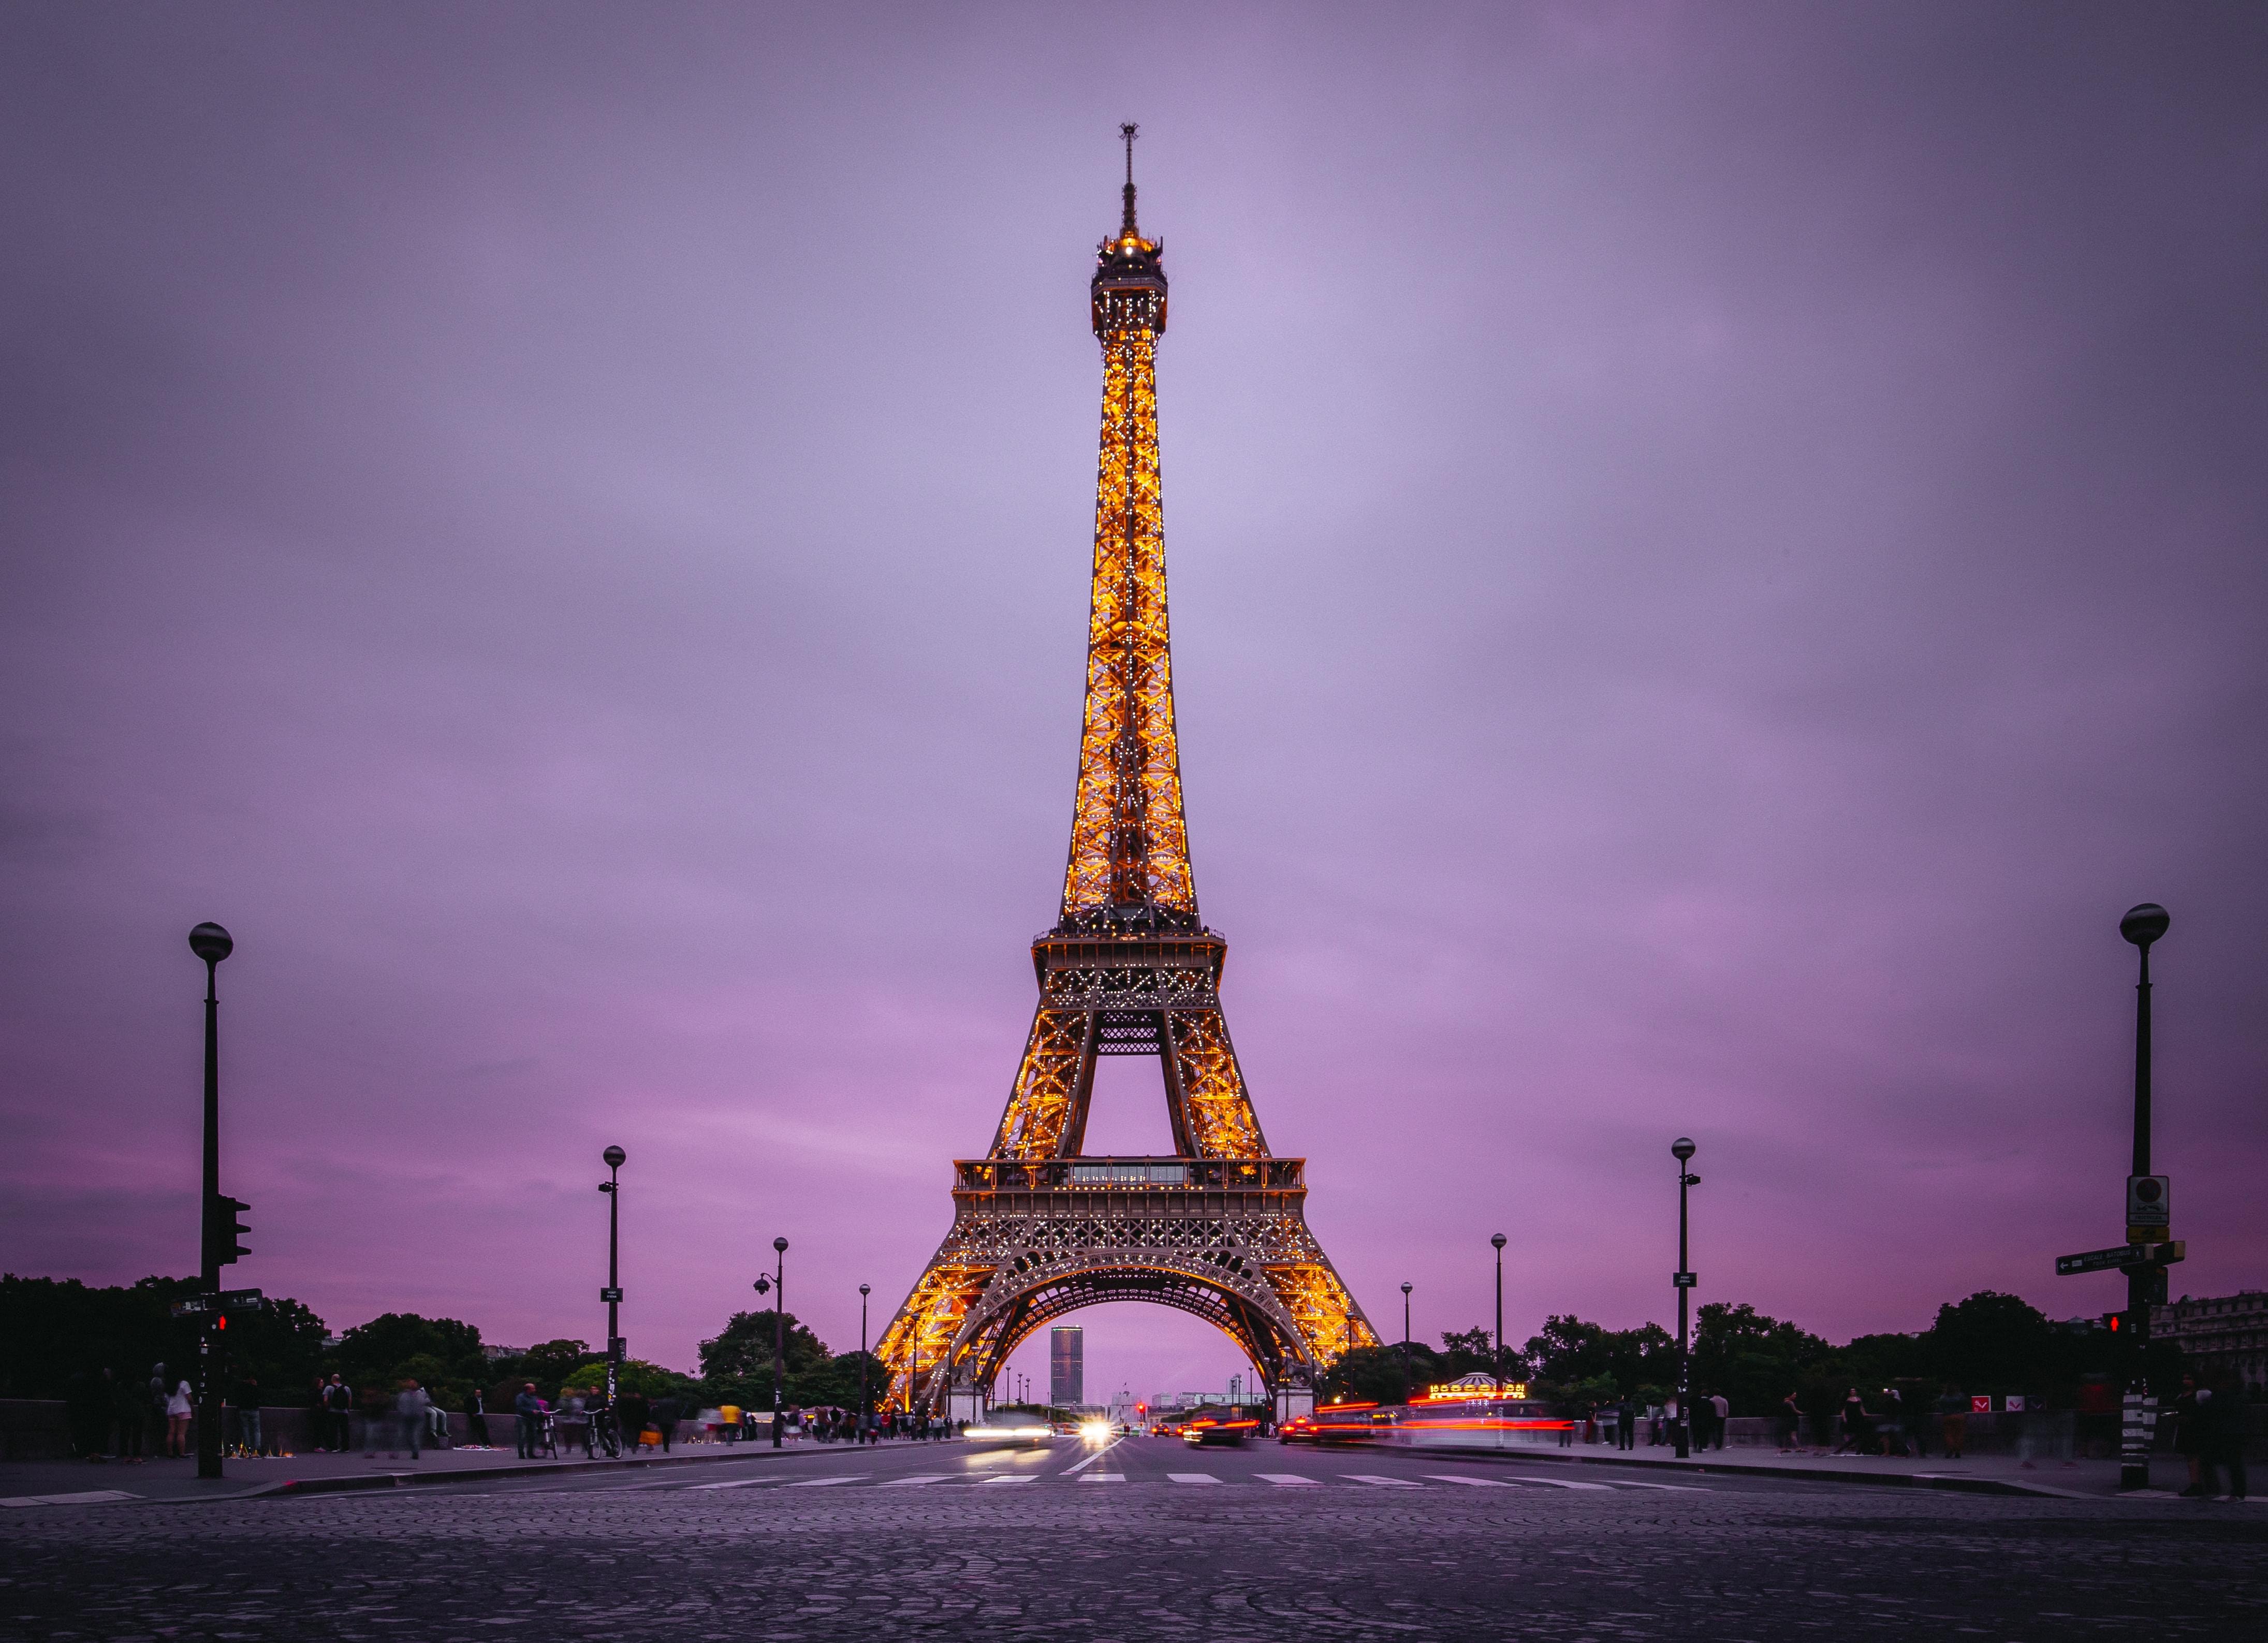 Enjoy The Eiffel Tower Light Show